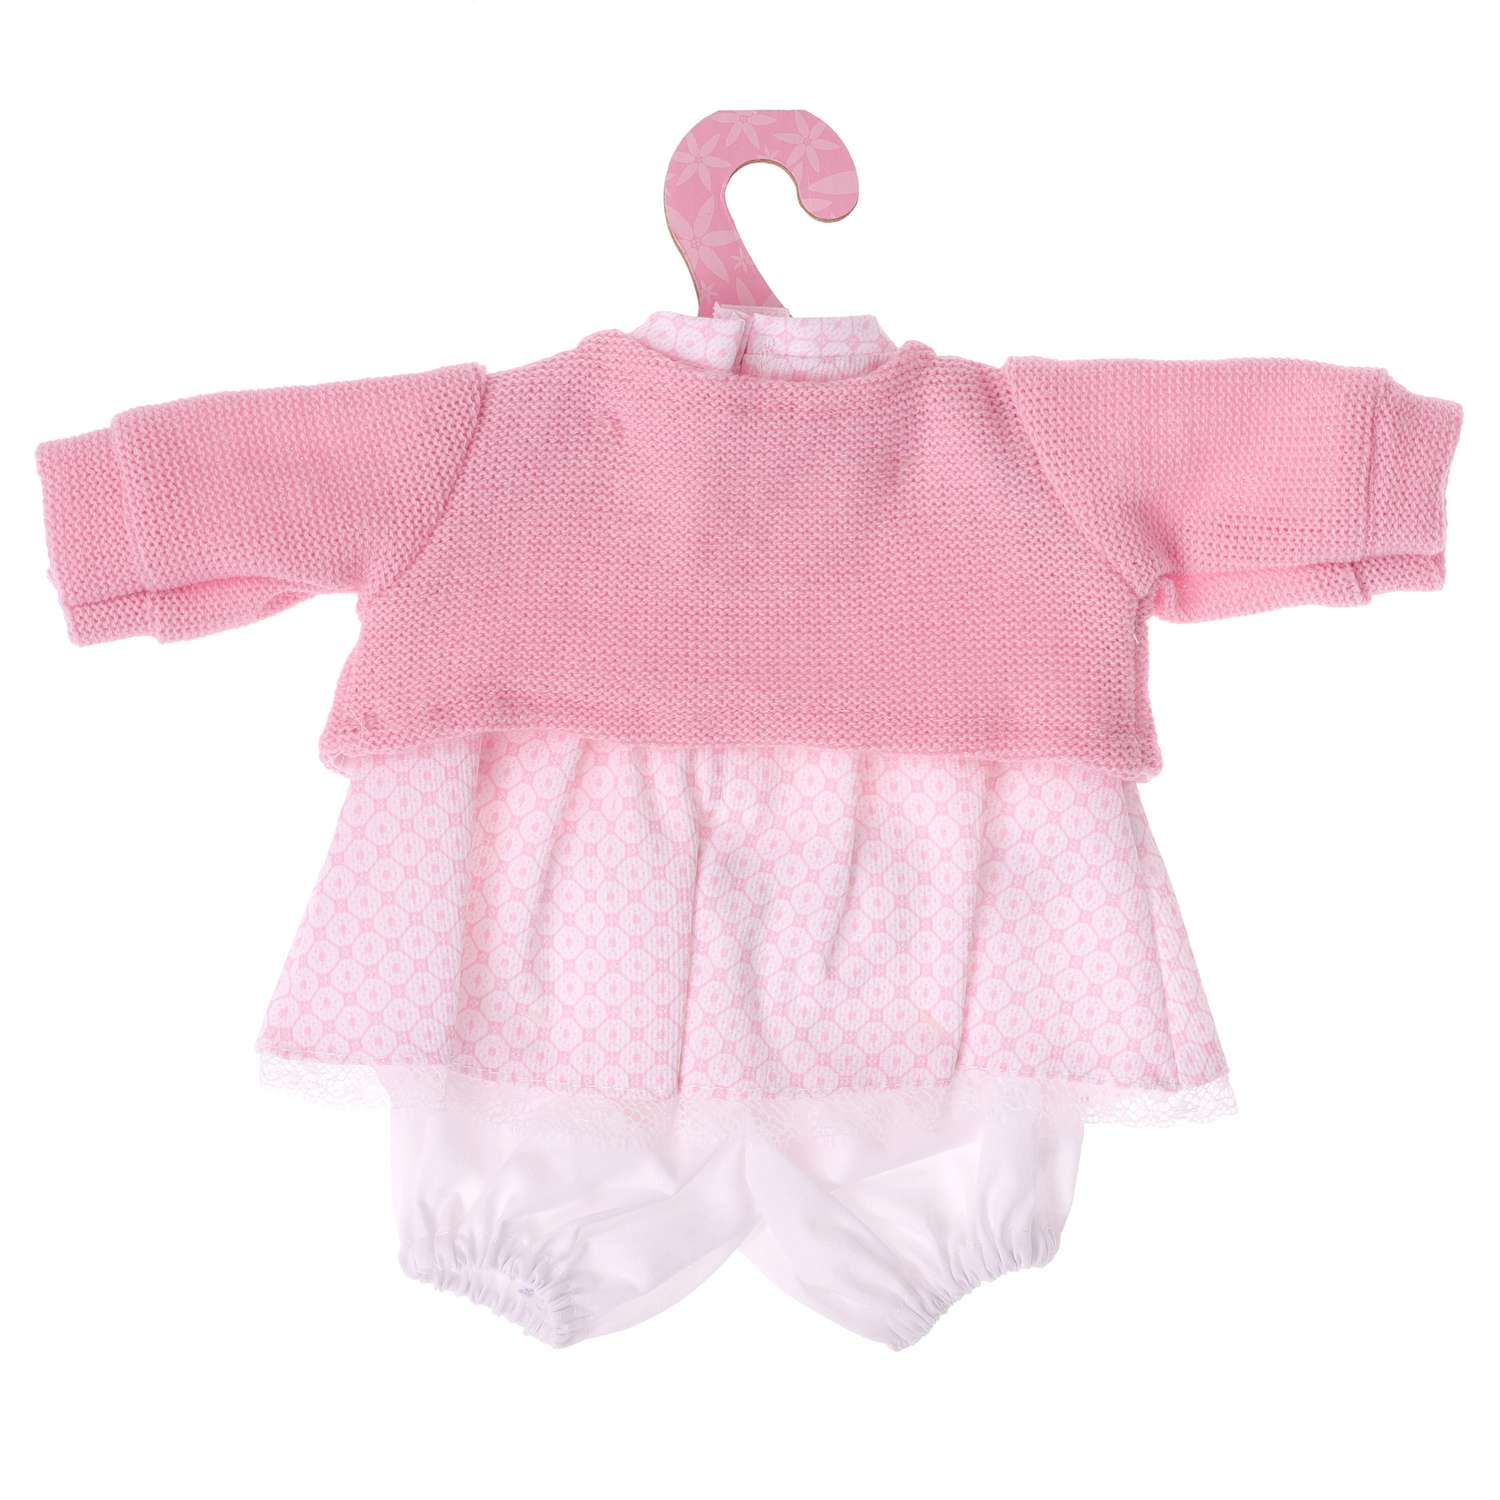 Одежда для кукол и пупсов Antonio Juan 30 - 35 см платье болеро розовое трусики 91033-21 - фото 4